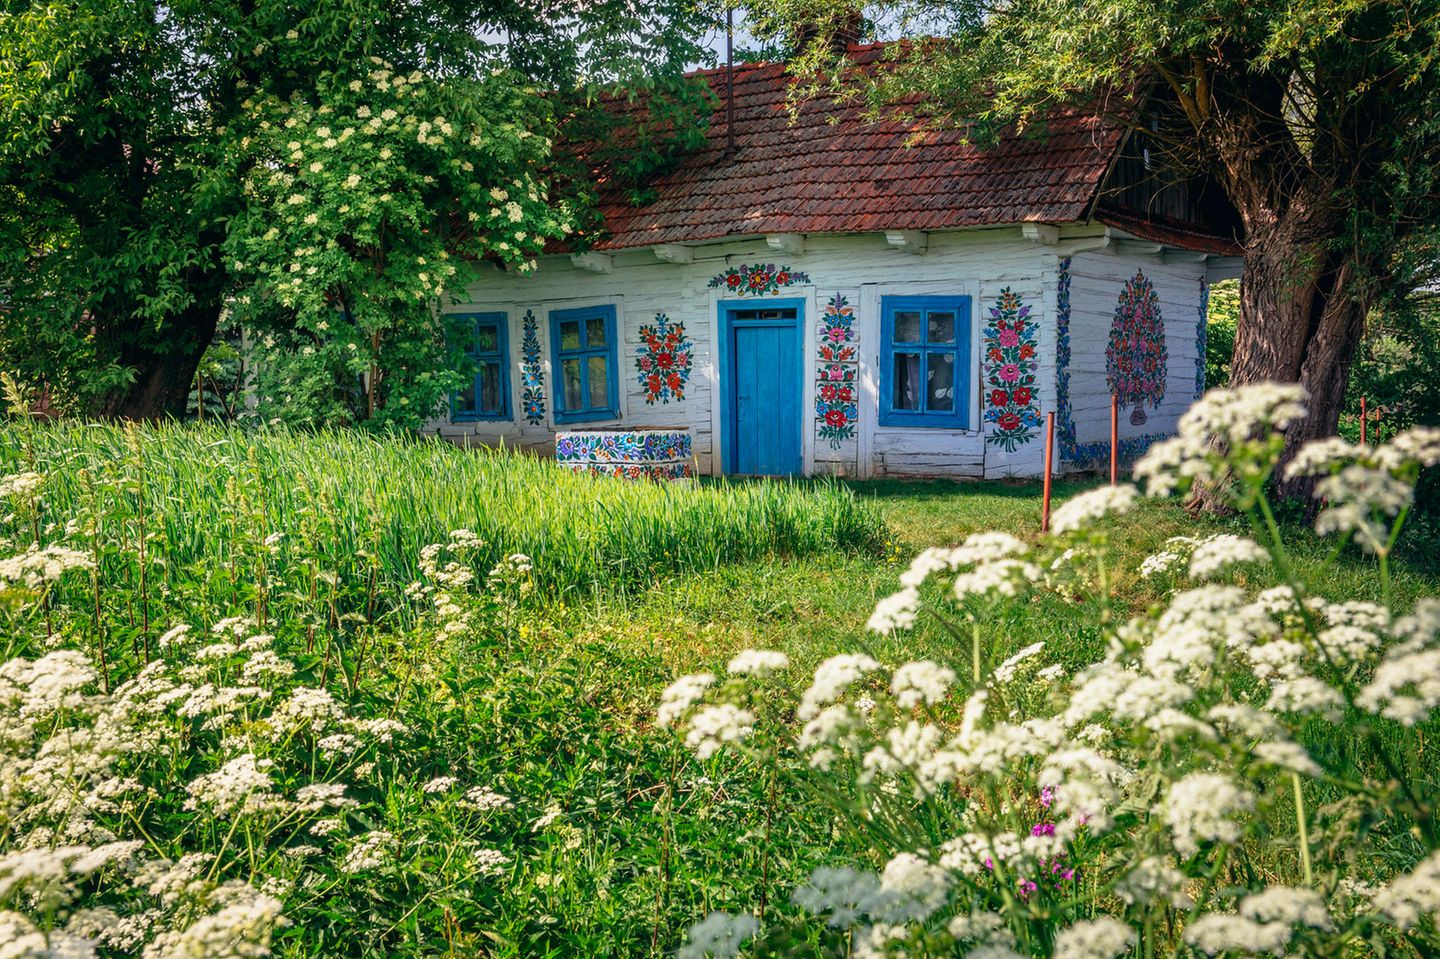 Haus mit Blumenmuster in Zalipie in Polen